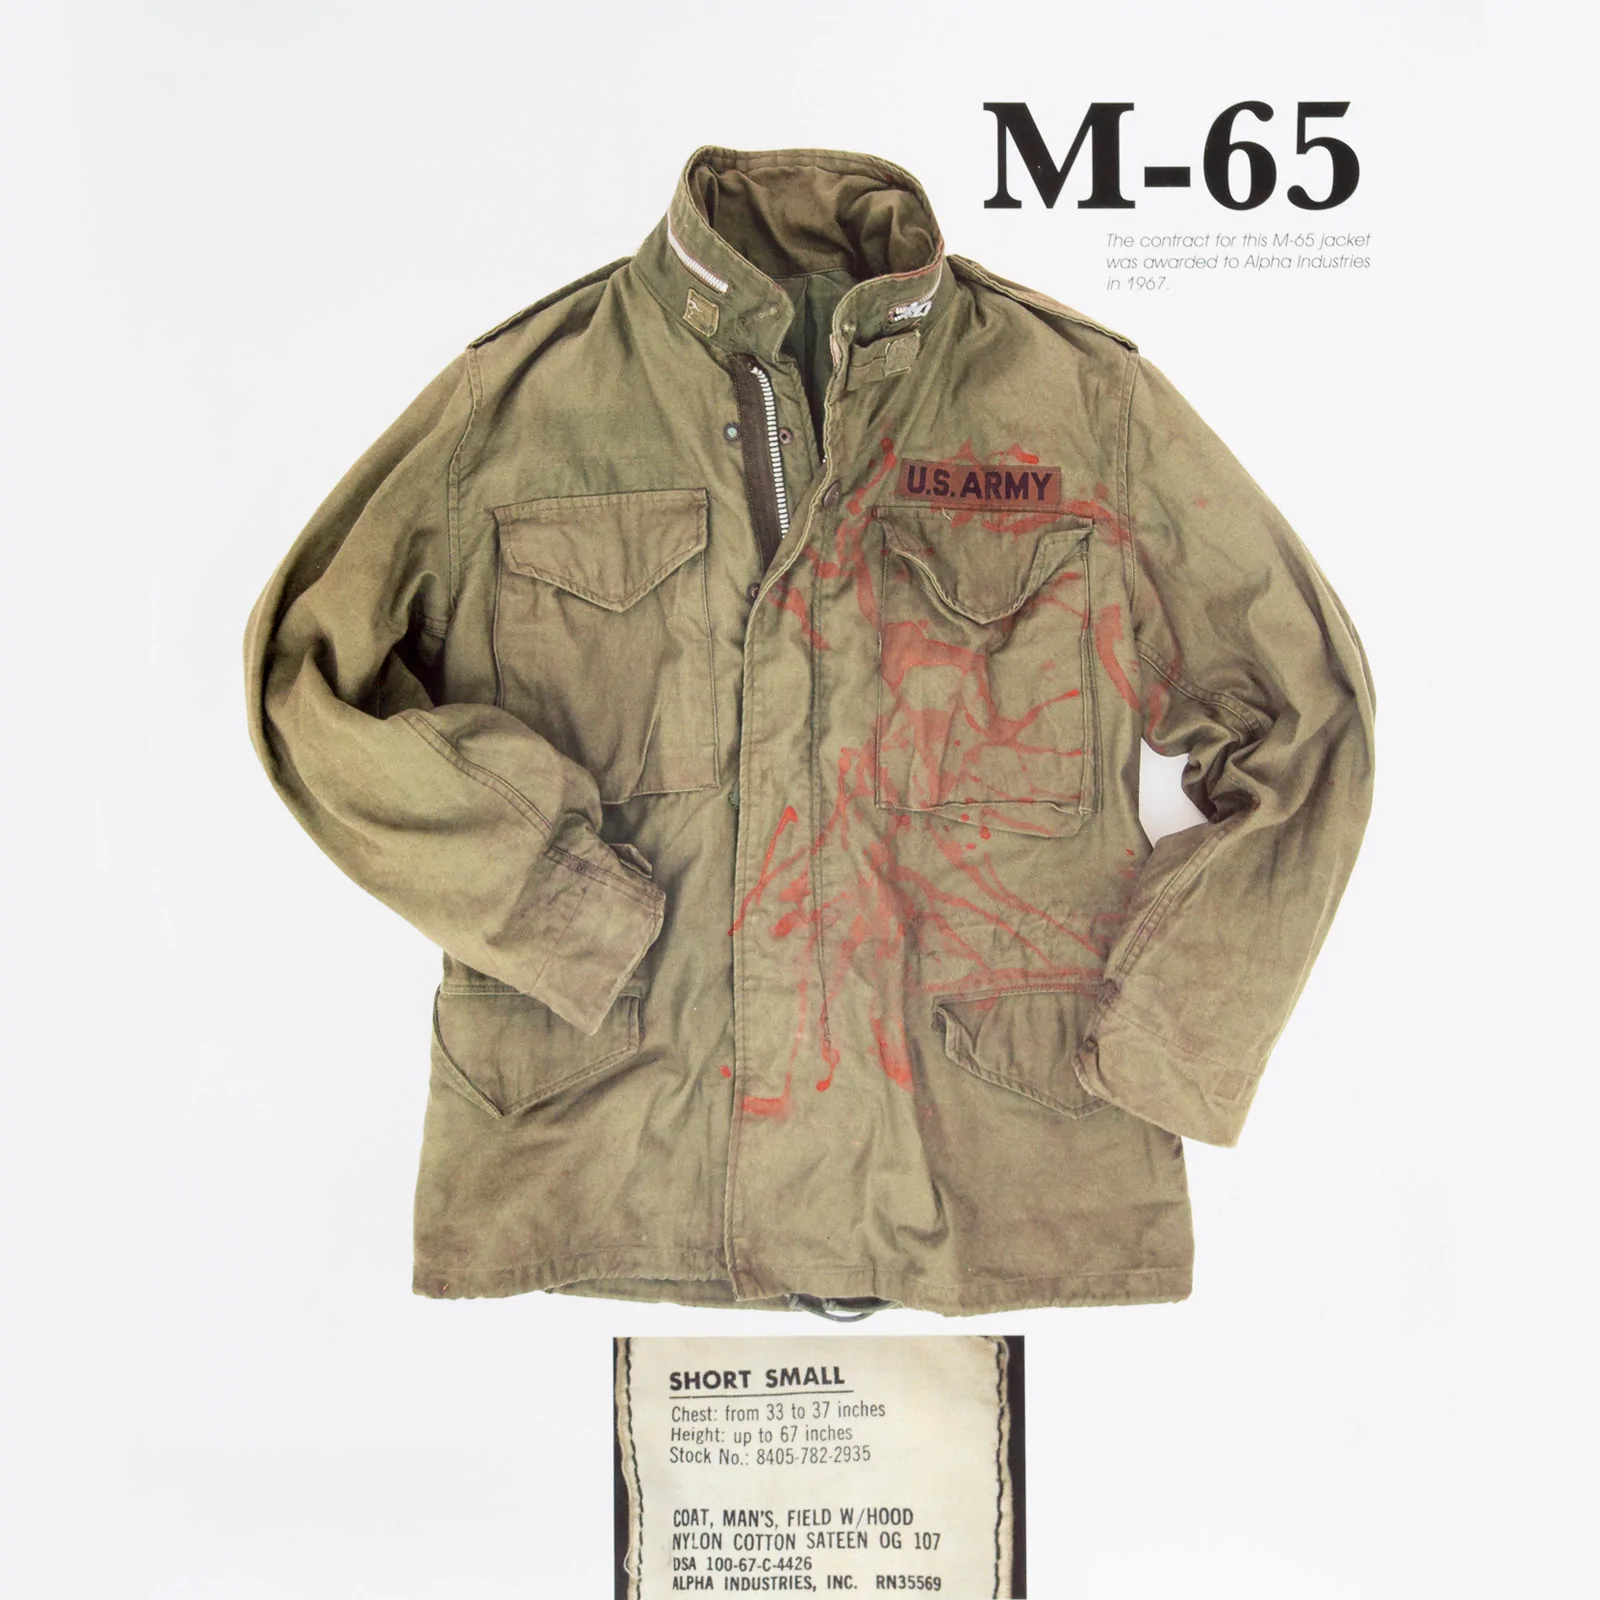 M-65 jacket